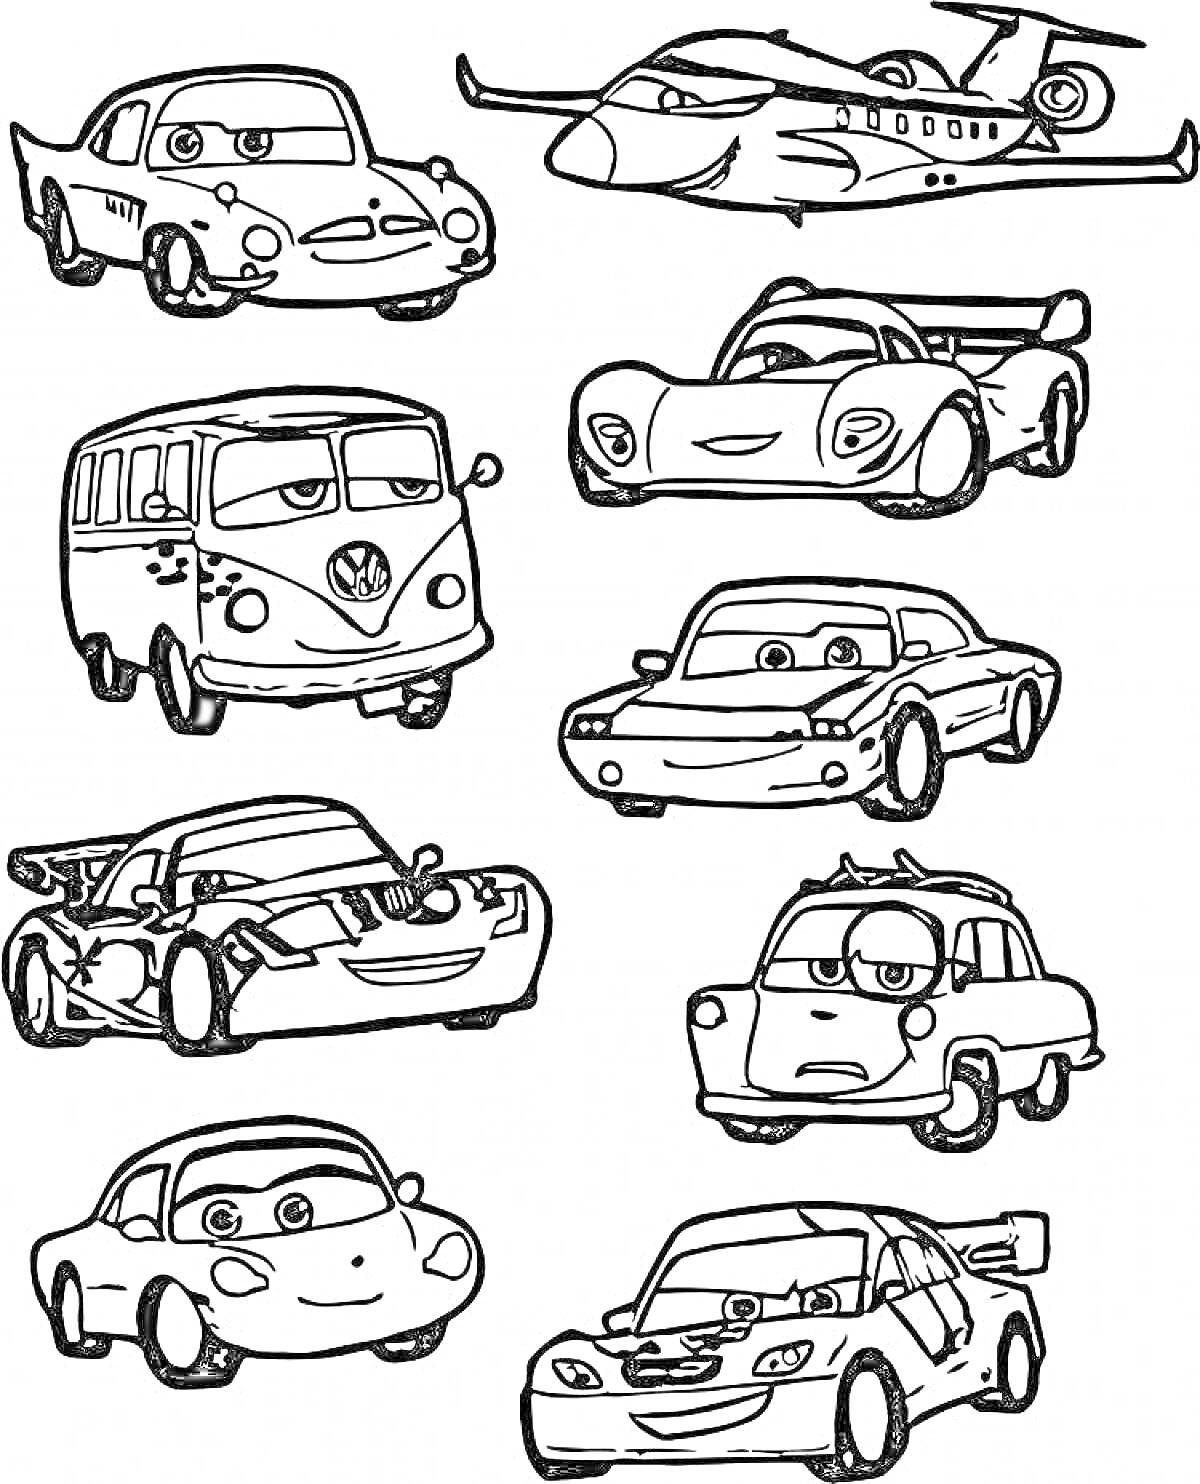 Раскраска Раскраска с маленькими машинками и самолетом, включающая легковые автомобили, гоночные автомобили, автобус и самолет